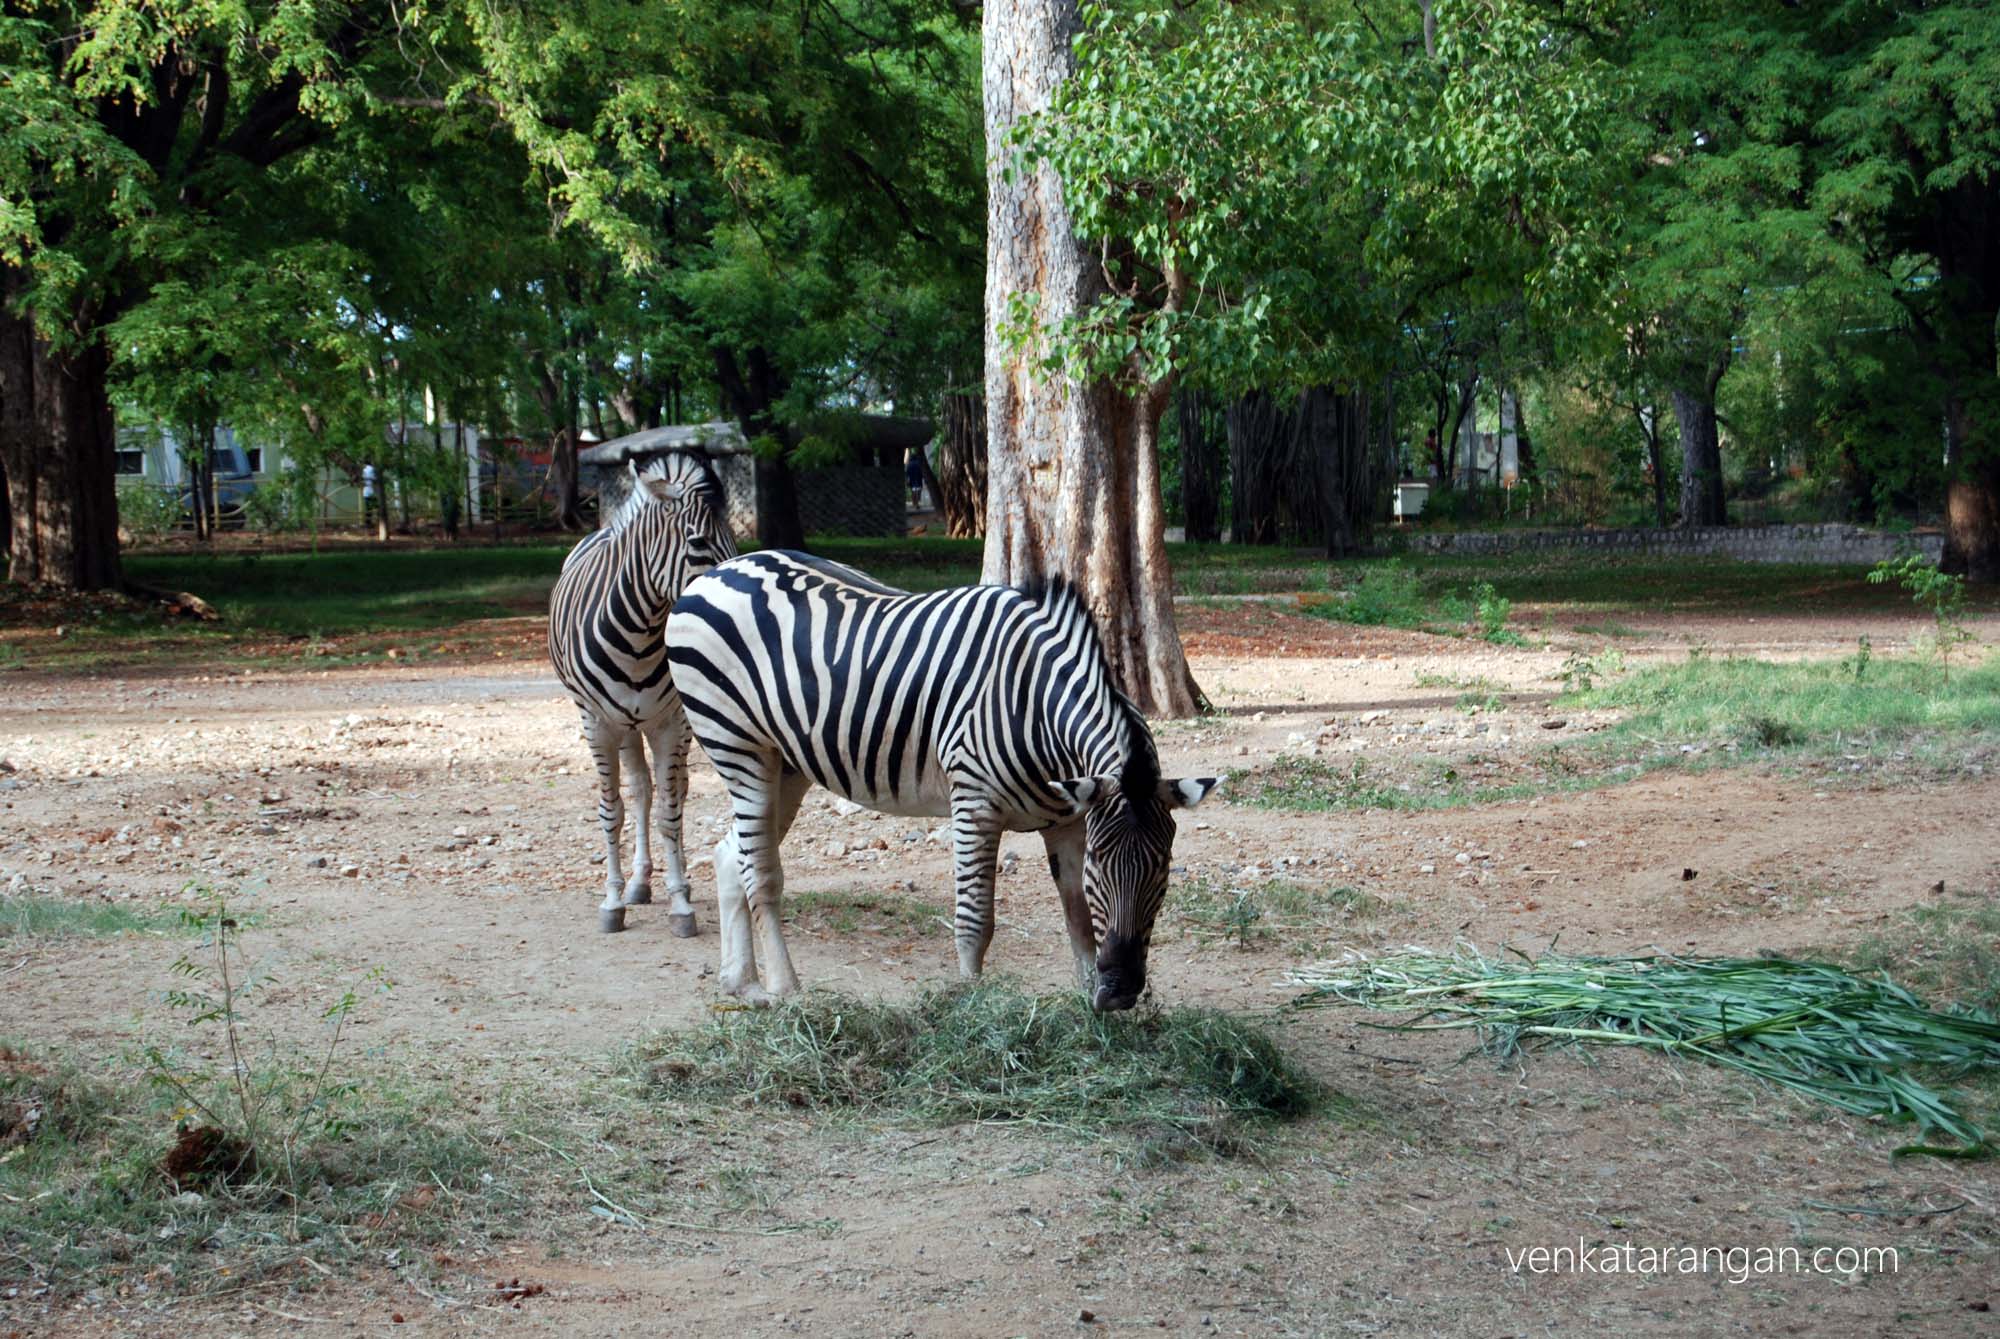 Zebras in the zoo